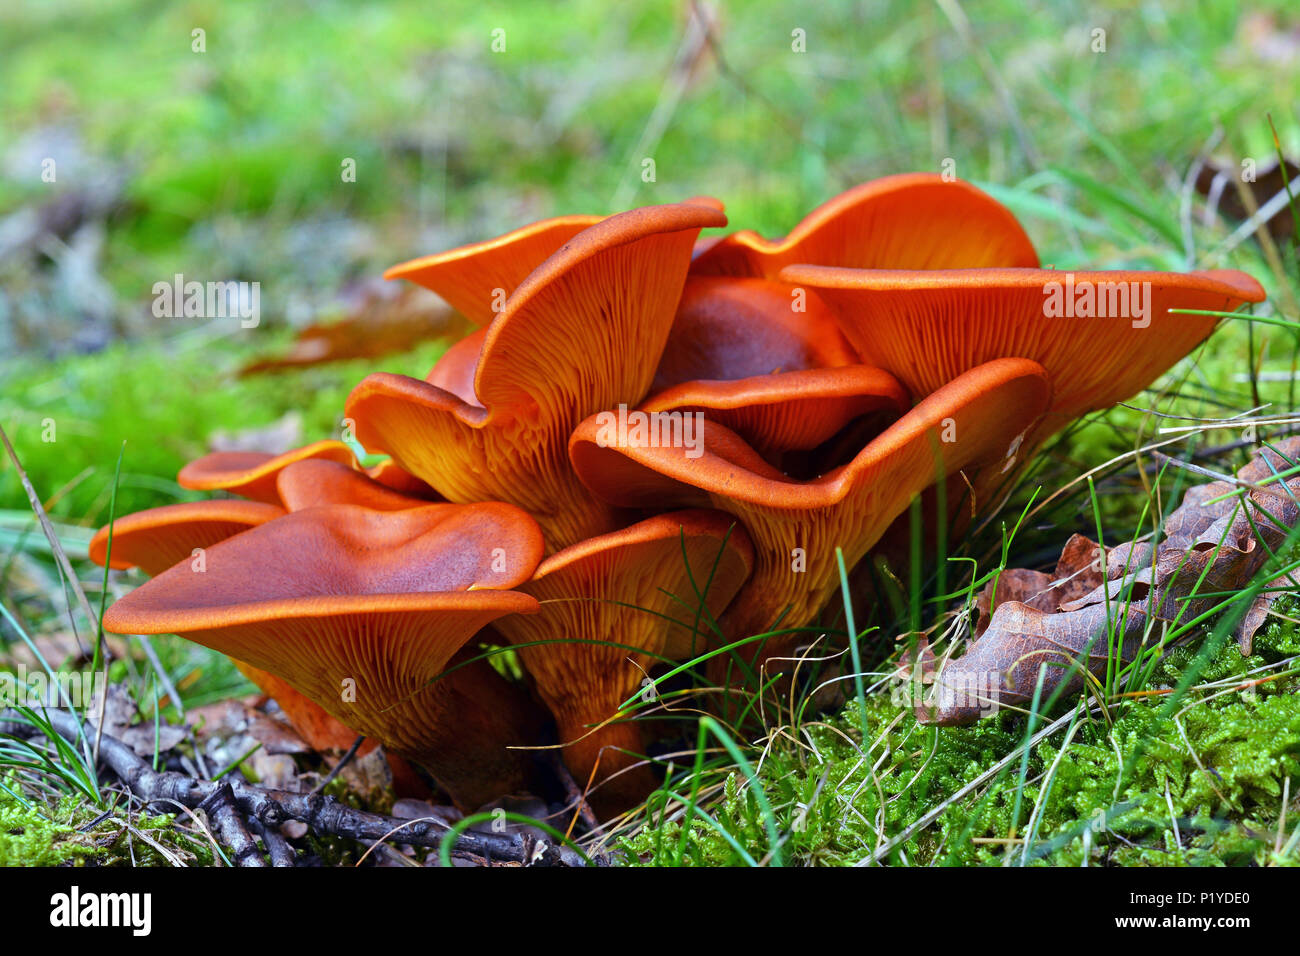 Omphalotus olearius cluster champignons toxiques dans la forêt Banque D'Images